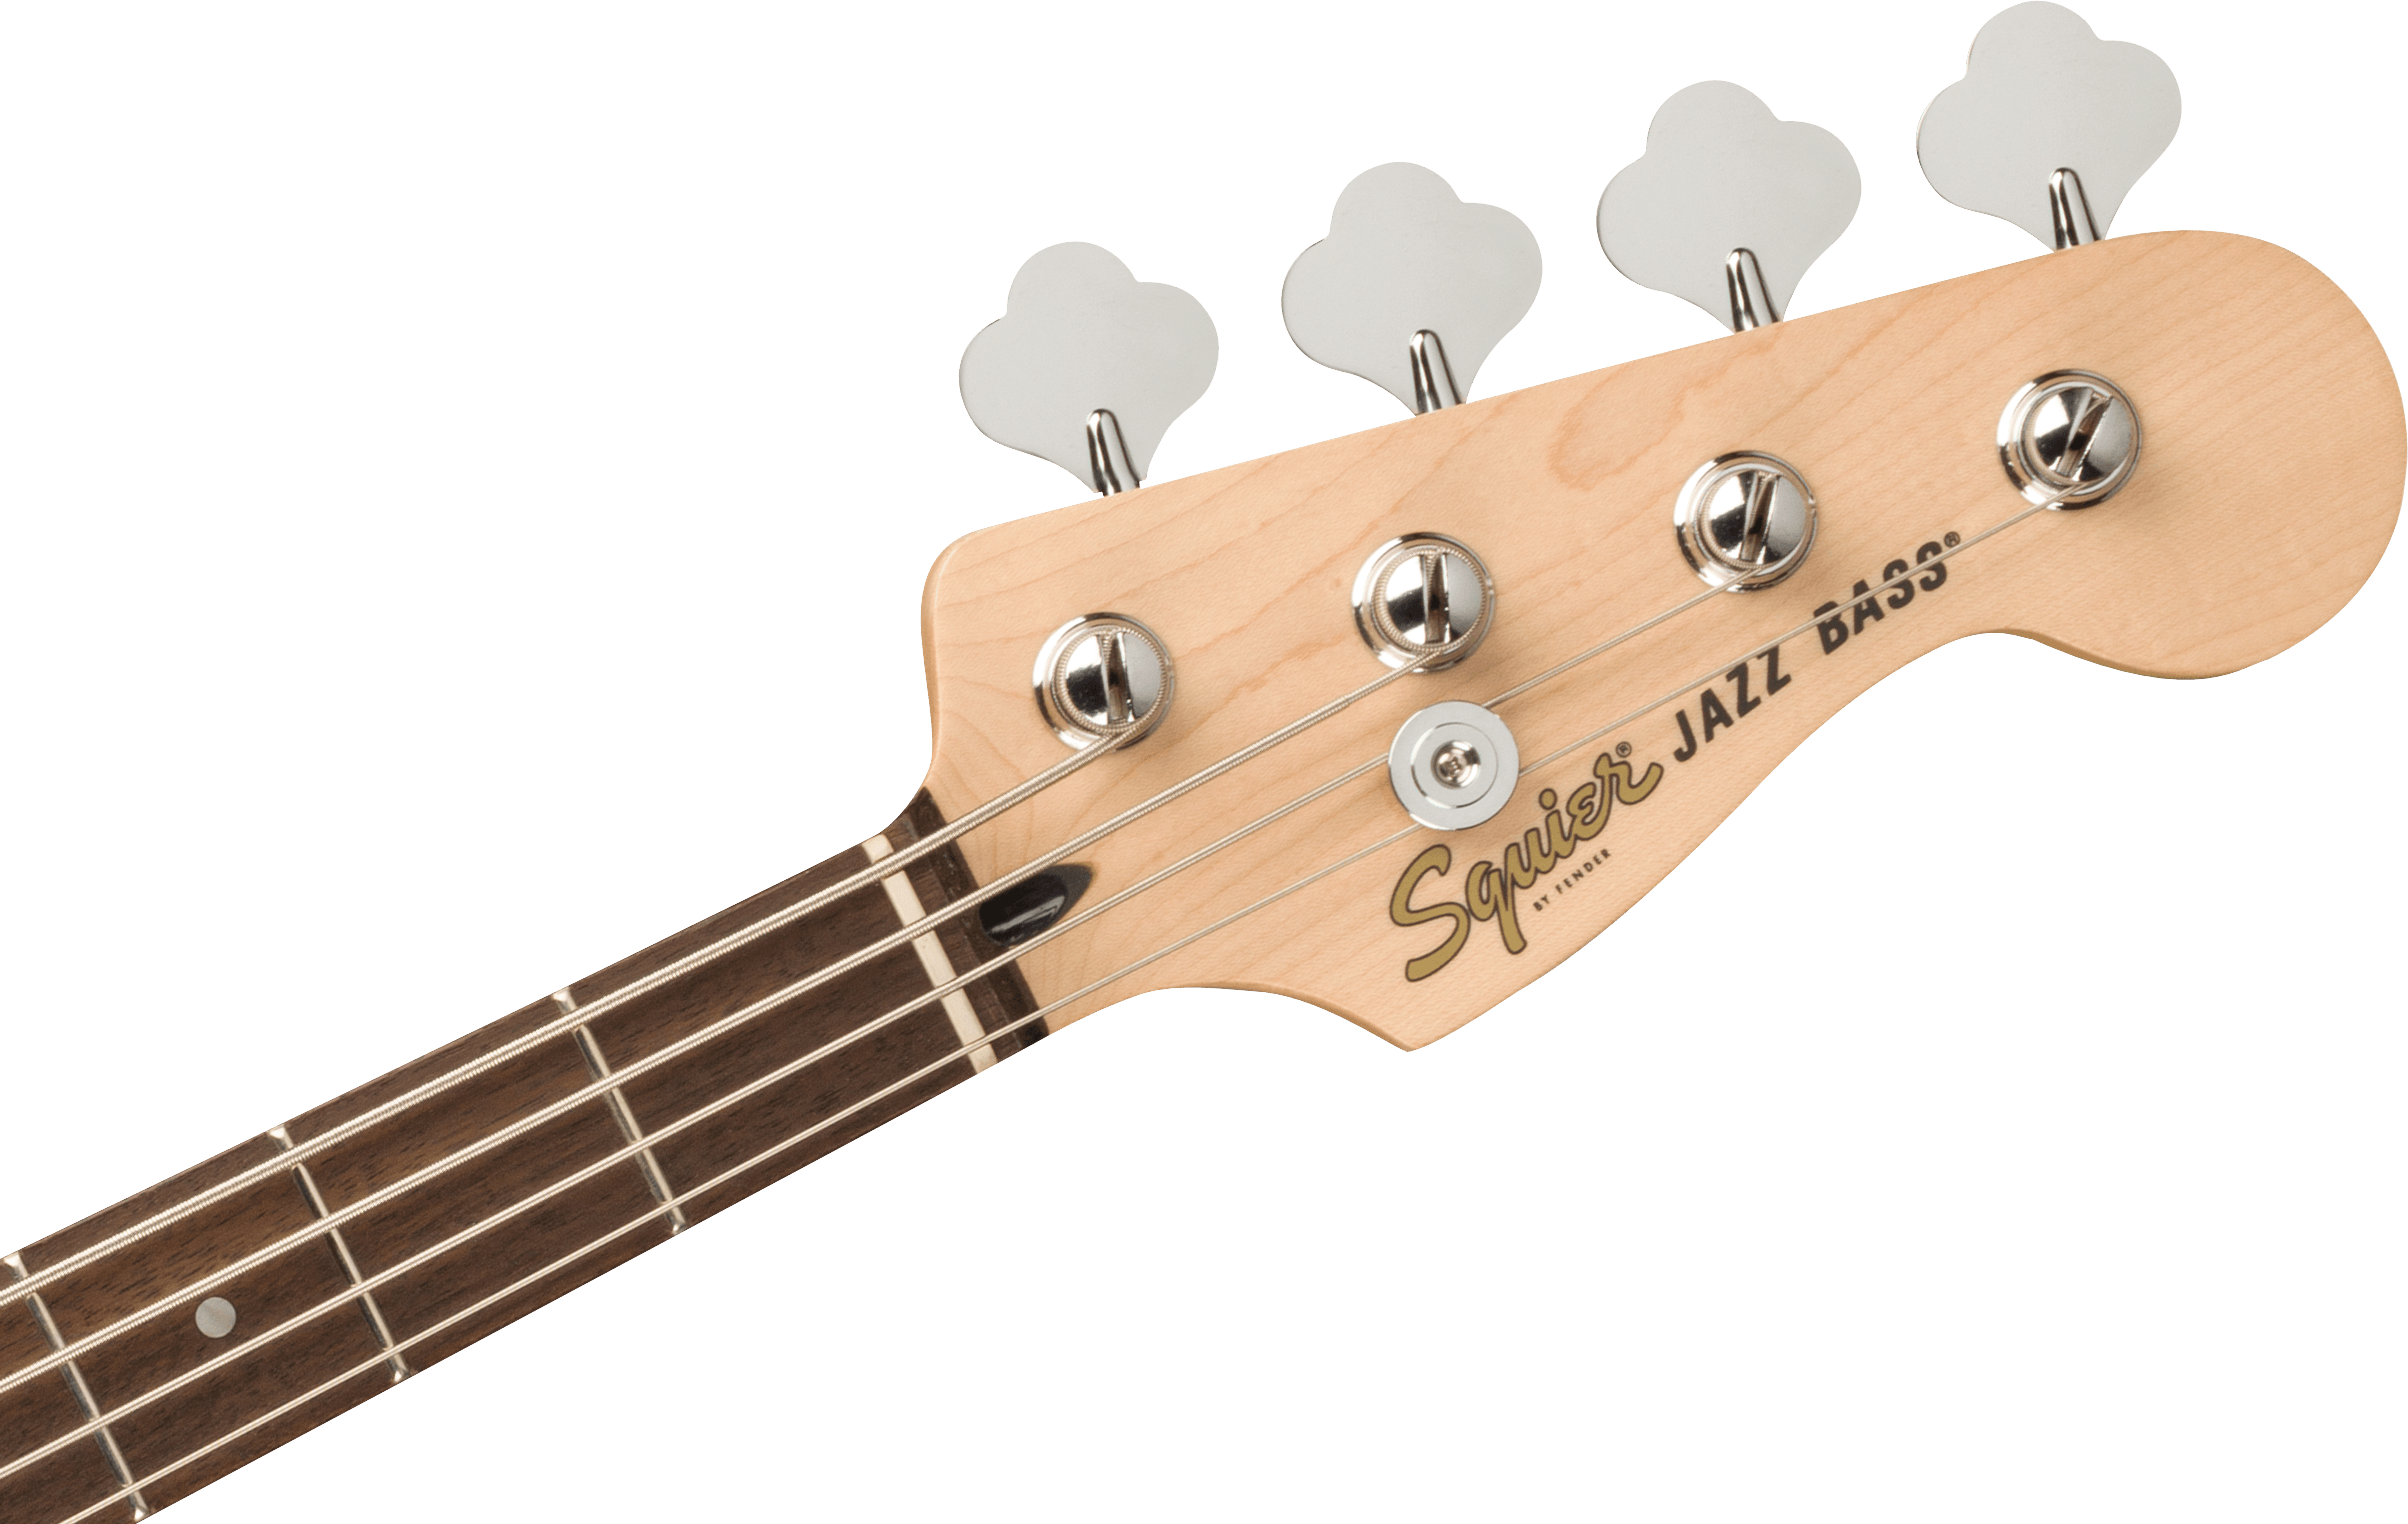 Squier Affinity Series Jazz Bass In Burgundy Mist